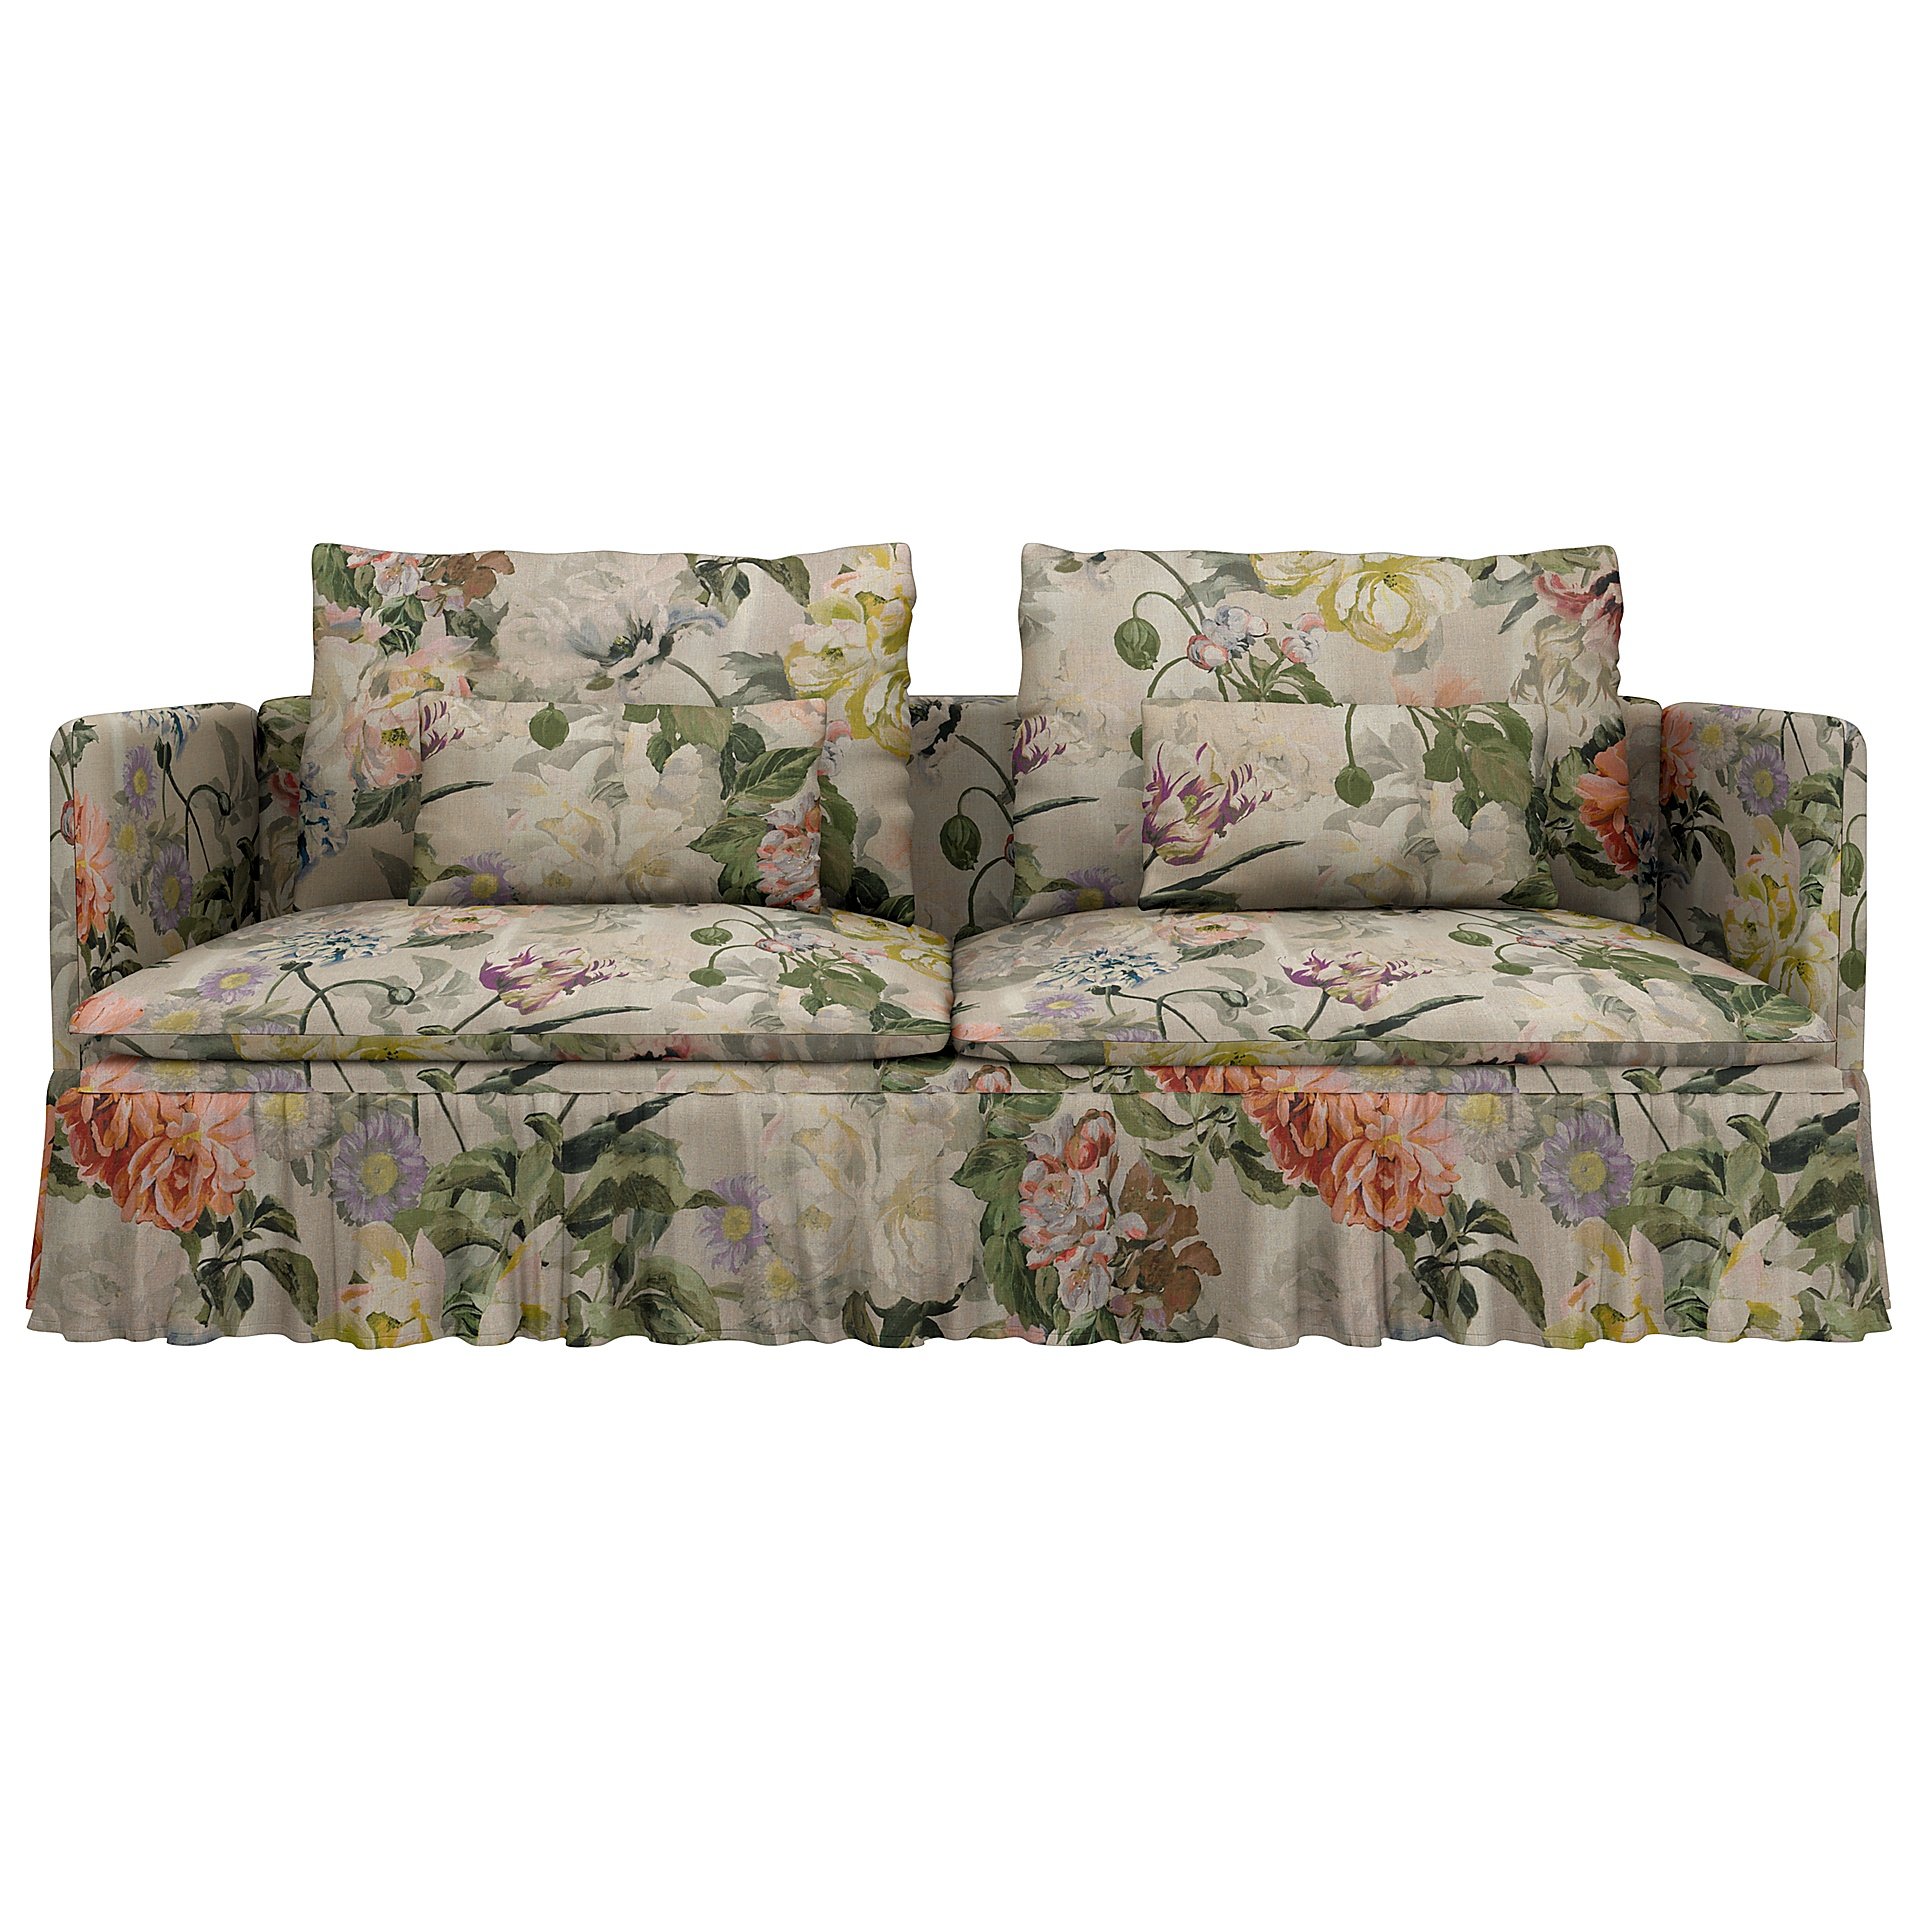 IKEA - Soderhamn 3 seater sofa with armrests cover, Delft Flower - Tuberose, Linen - Bemz